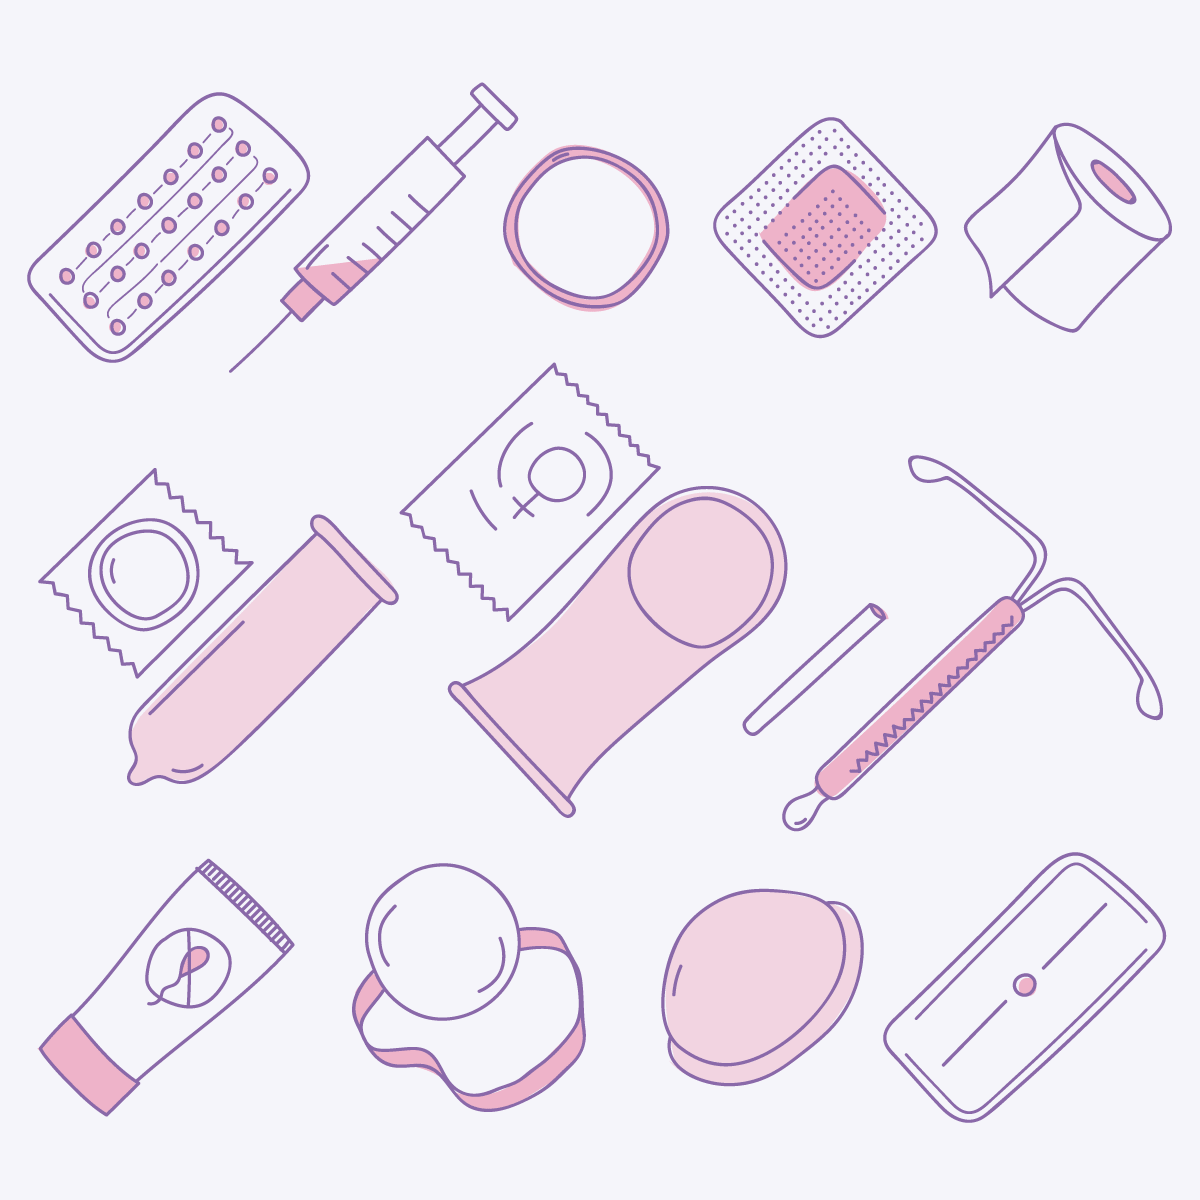 Ilustración con los distintos tipos de anticonceptivos